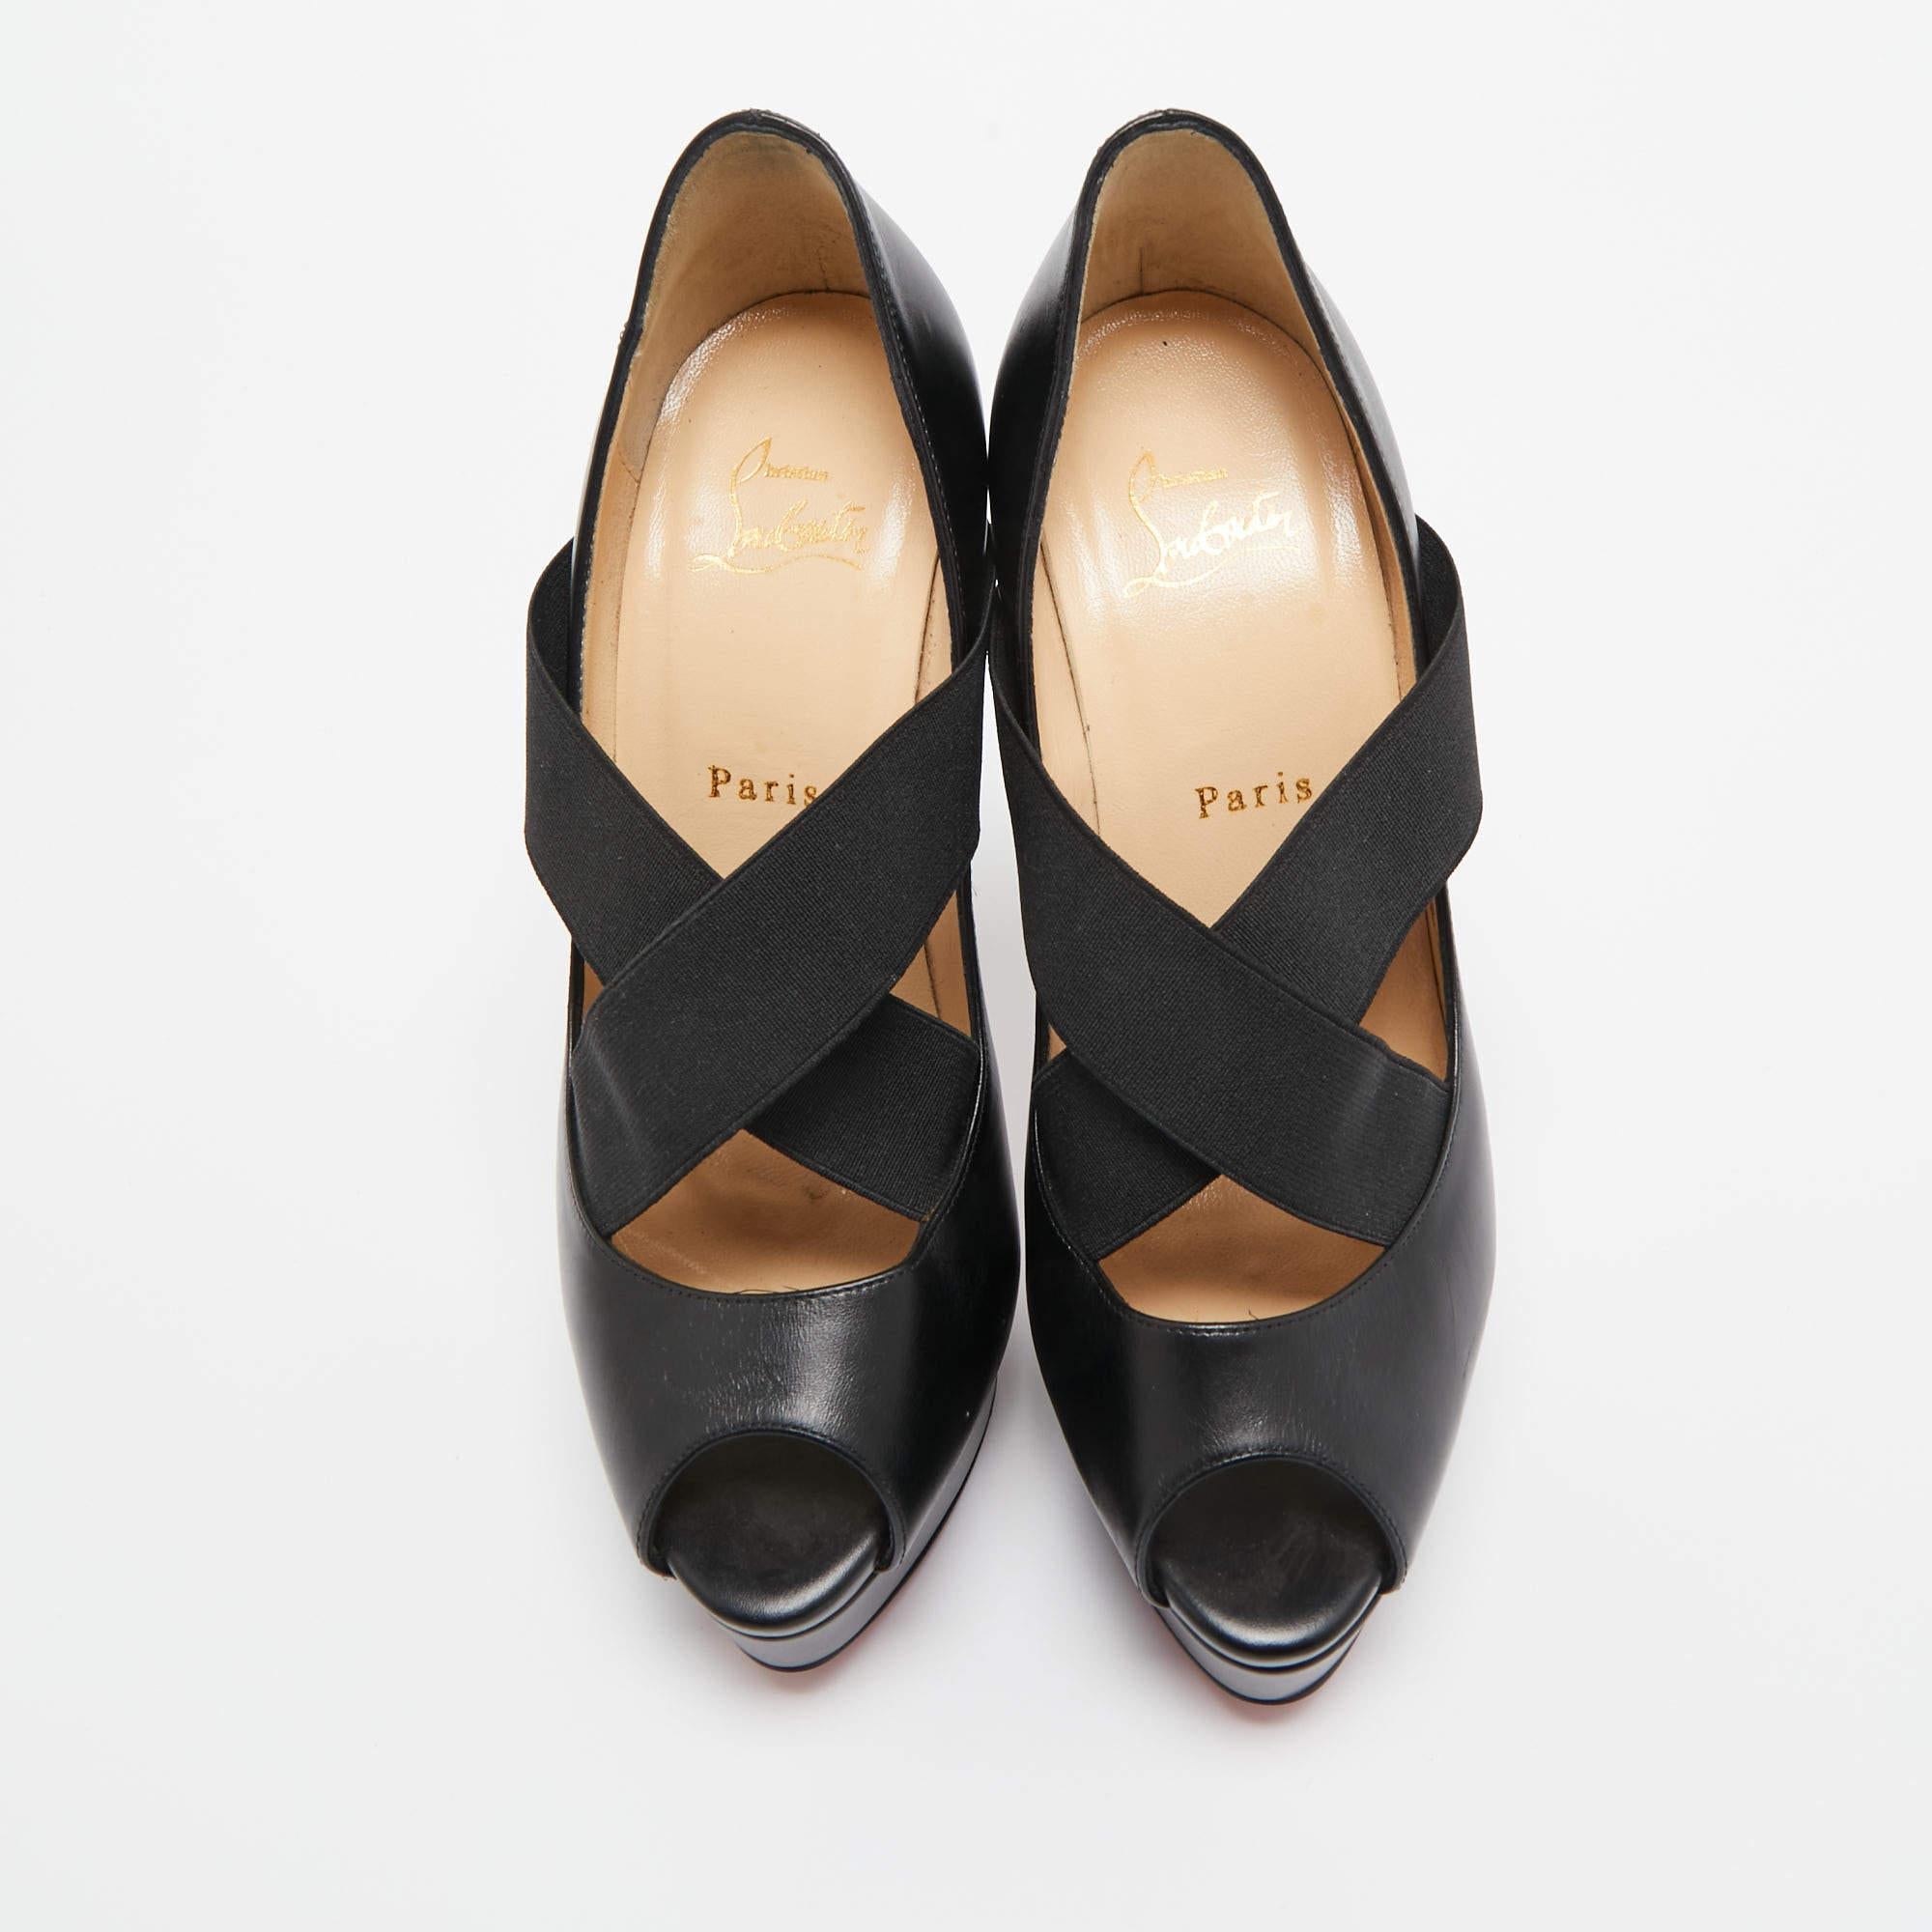 Ces escarpins de Christian Louboutin sont destinés à être un choix aimé. Merveilleusement confectionnés et équilibrés sur des talons élégants, ces escarpins soulèveront vos pieds dans une silhouette éblouissante.

Comprend
Boîte de marque